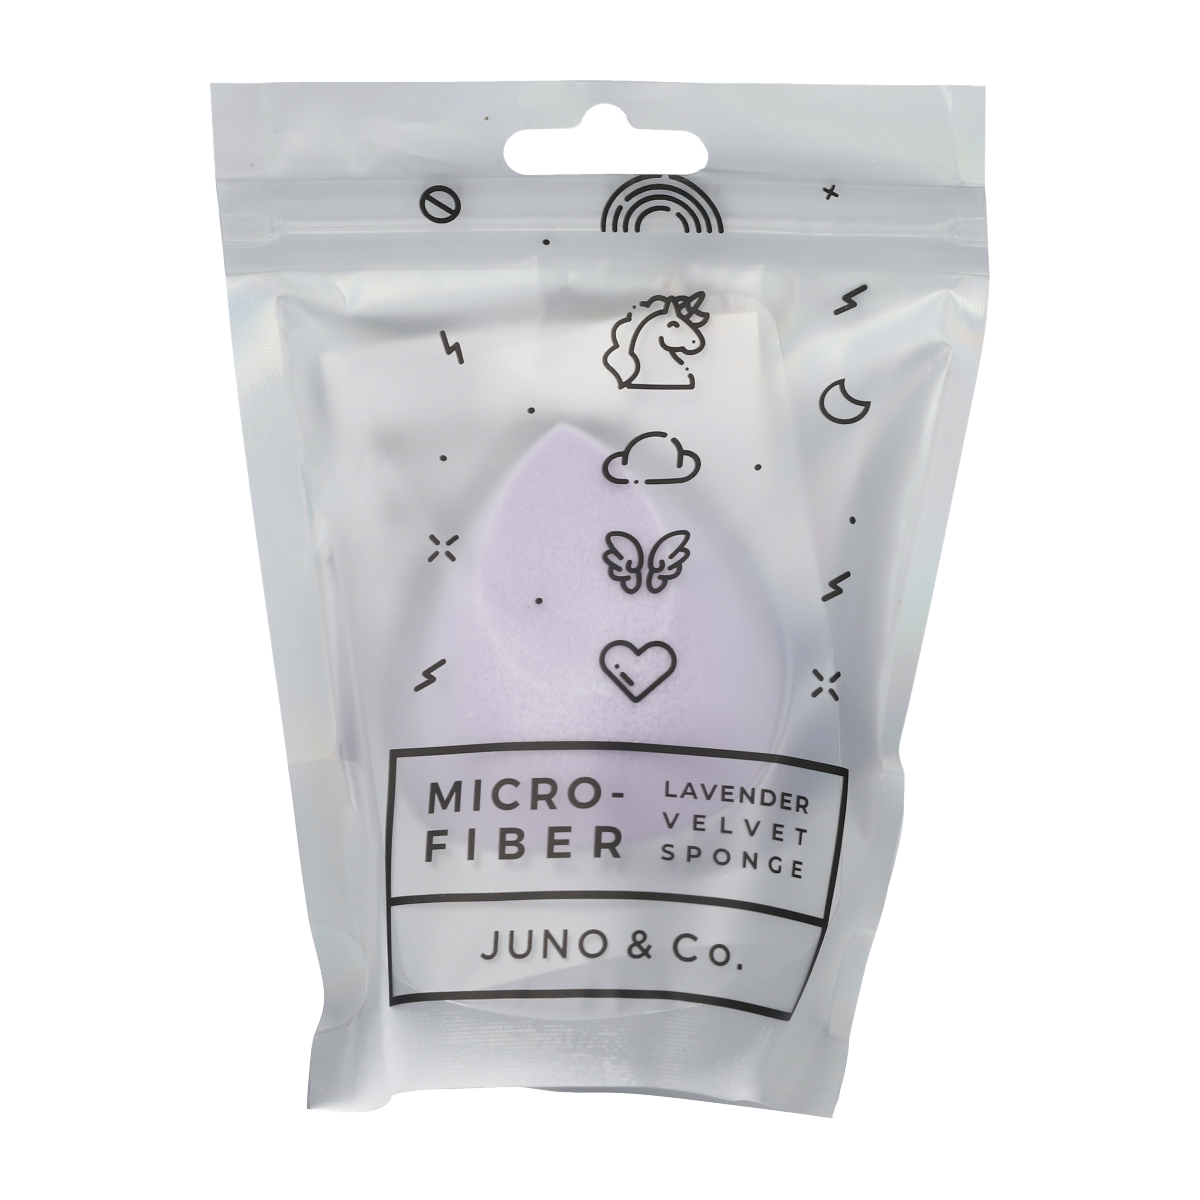 Microfiber Lavender Velvet Sponge / Juno & Co.